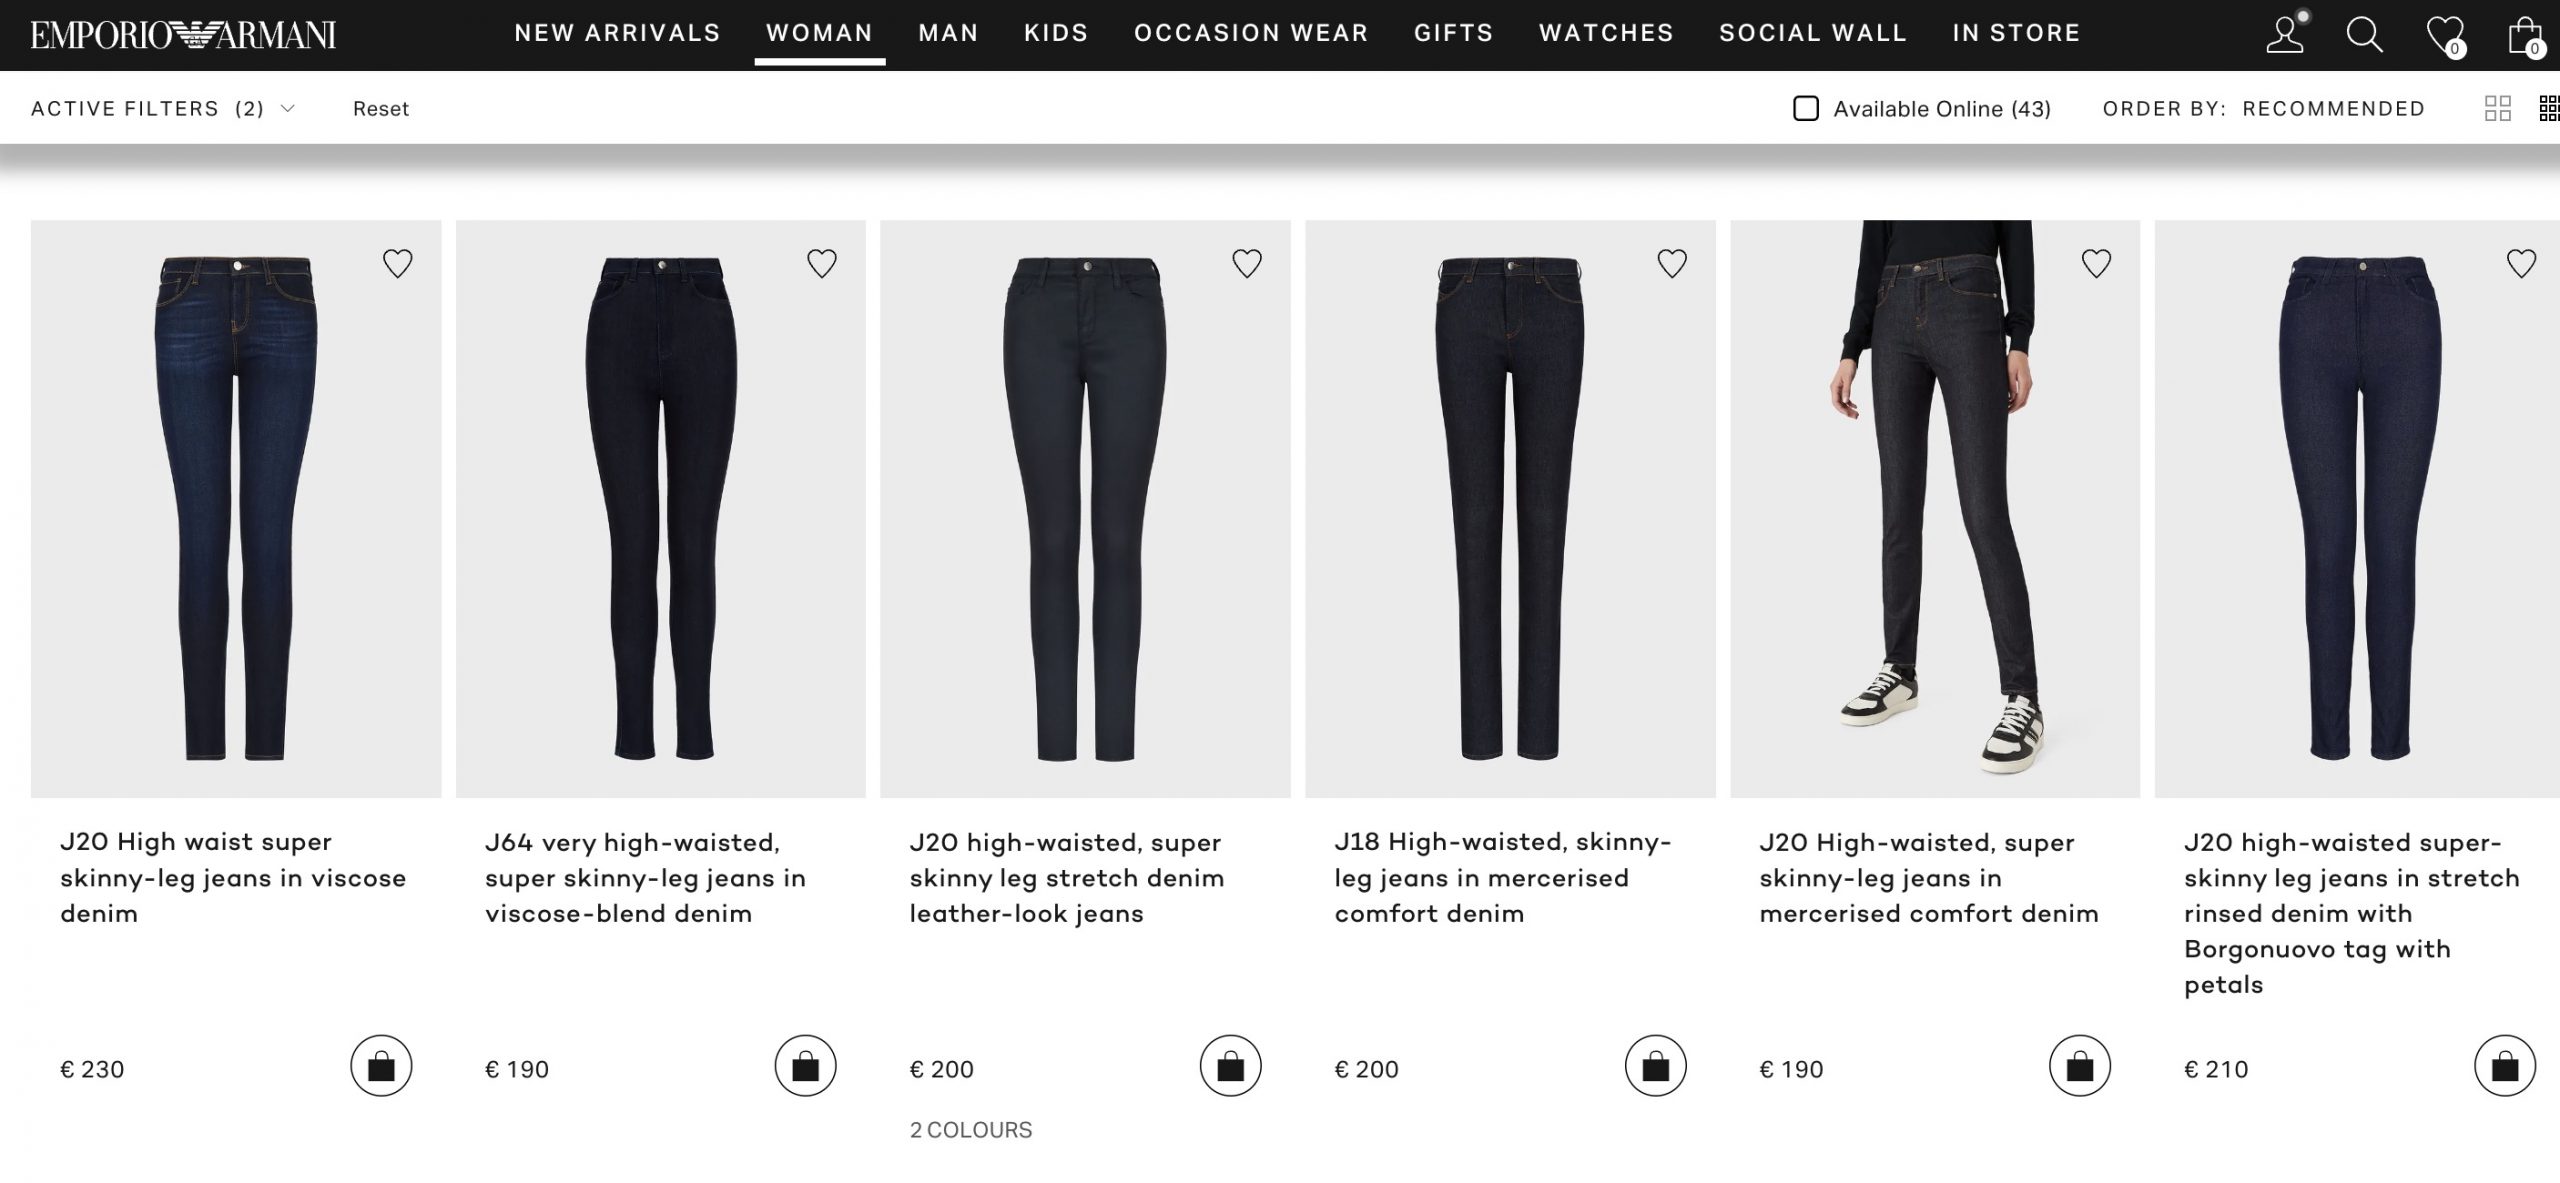 Женские джинсы Armani. Официальная страница сайта бренда.